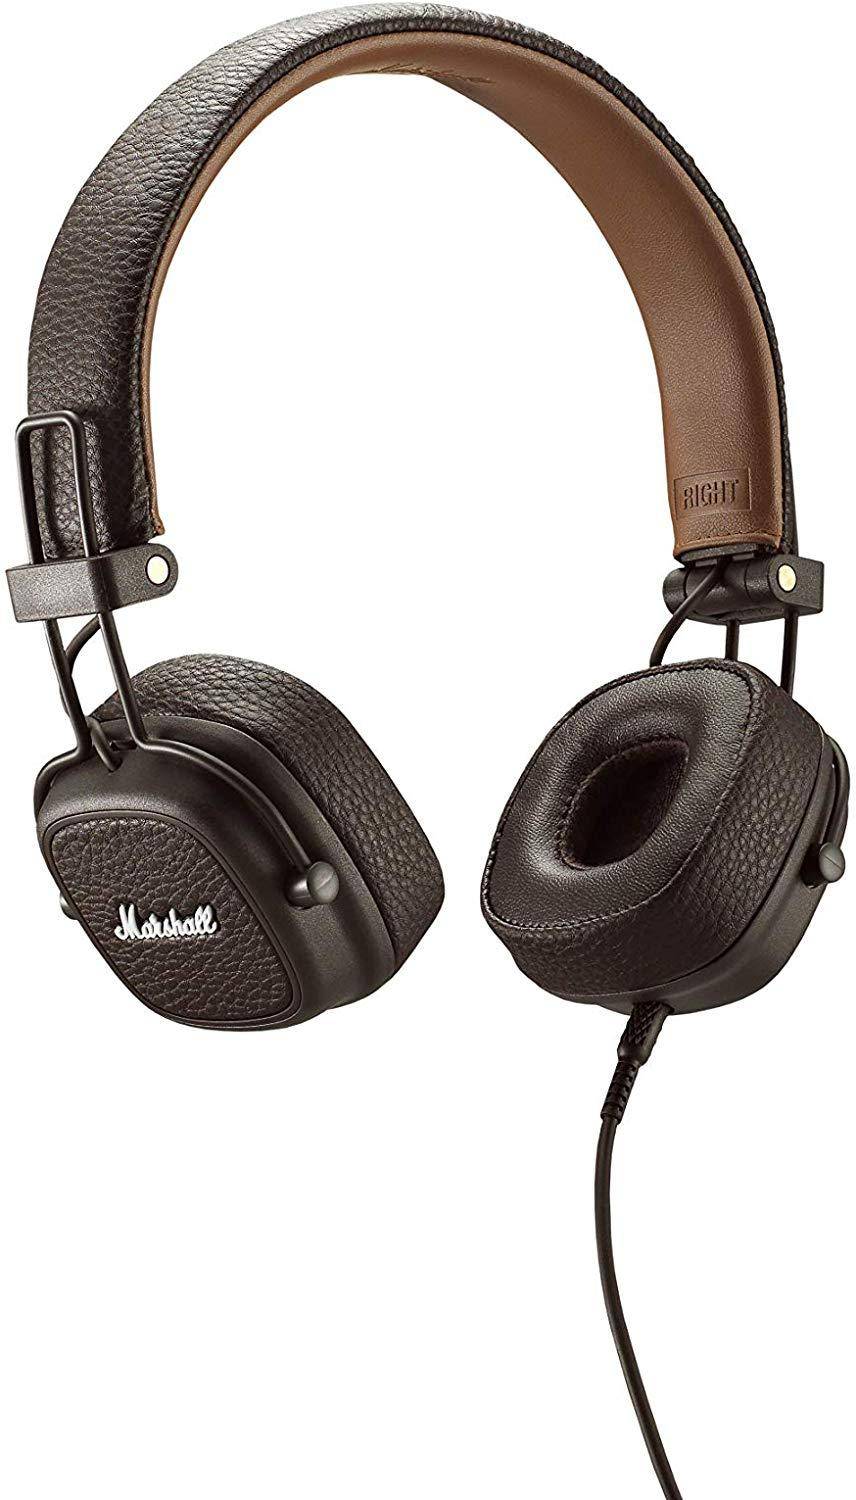 Marshall Major 2 On-Ear Headphones zoom image